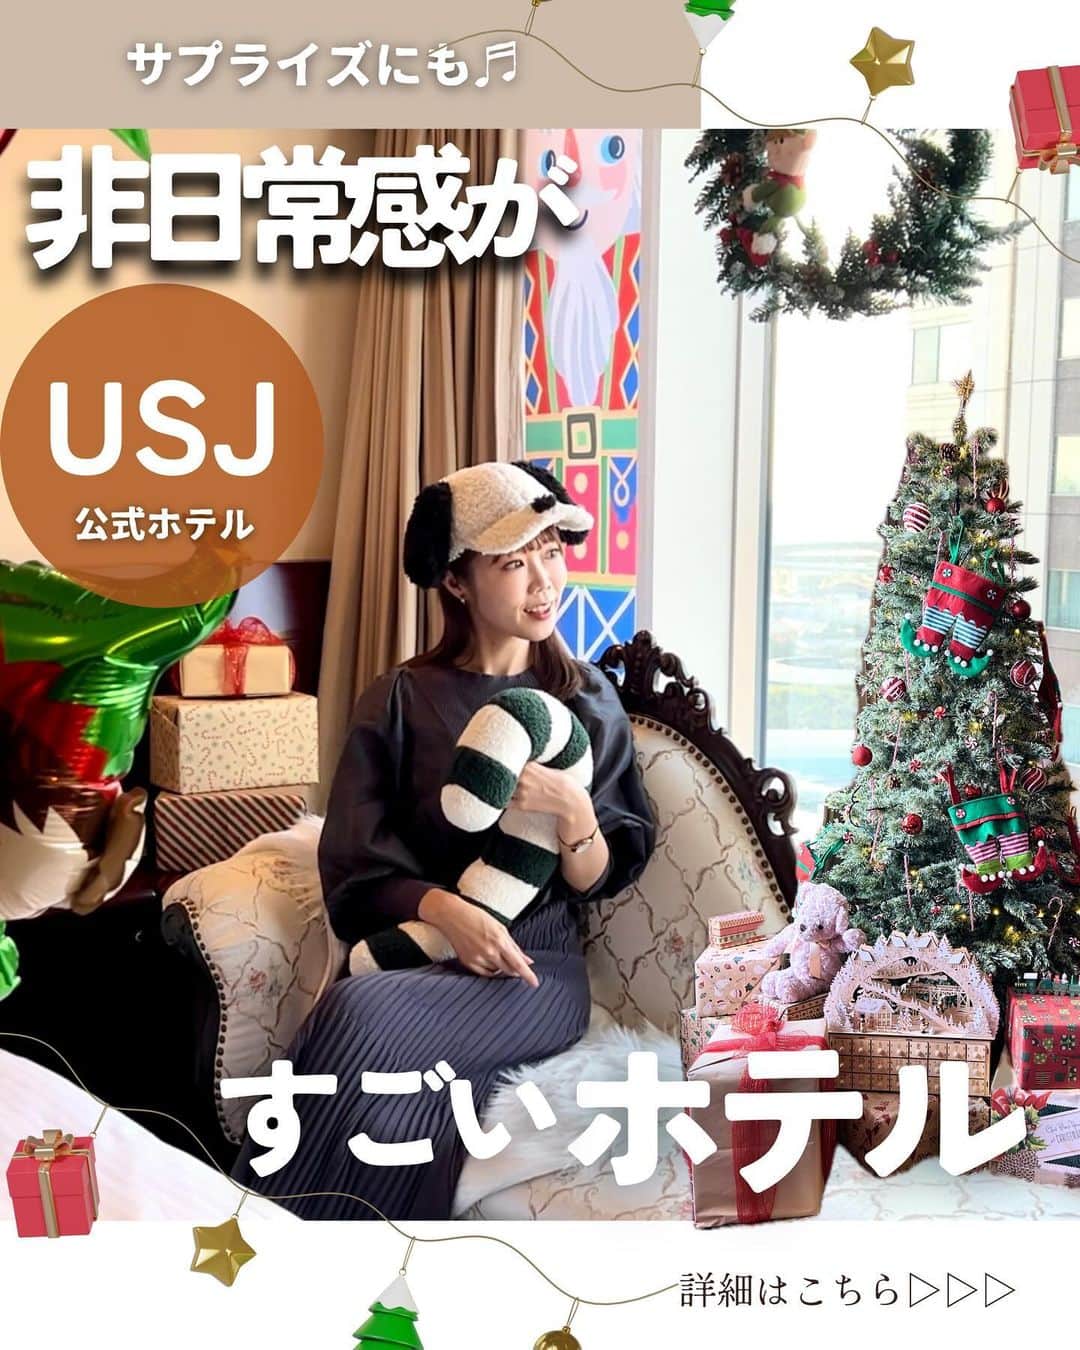 じゅみのインスタグラム：「サプライズにもピッタリ💕クリスマス限定ルーム🎄🎅 ⁡ 関西エリアの「ここ行きたい」を 日々紹介してます⇨ @jumy_as ⁡ ✎*┈┈┈┈┈┈┈┈┈┈┈ ⁡ USJからすぐ🌏 ホテル京阪ユニバーサルタワー✨ ⁡ ホテルのクリスマスを楽しむための 取り組みが本気すぎた💫 ⁡ ✎*┈┈┈┈┈┈┈┈┈┈┈ ⁡ ▪️クリスマススーペリアルーム ⁡ パークを見下ろせる絶景のこちら🎢 玩具箱をひっくり返したような かわいいクリスマス装飾オンパレード🤶 ⁡ 鏡もドレッサーも壁にも 至る所クリスマスでわくわく♬ ⁡ バルーンデコレーションは 1週間前までの予約限定らしいので お早めに🙋‍♀️ ⁡ ⁡ ▪️クリスマスデラックスダブル ⁡ 少し大人っぽい ライトが癒されるクリスマス装飾のこちら💁‍♀️ ⁡ リボン付きのツリーに 大きなテディベアに暖炉🧸 ⁡ まるで海外の洋館の家での クリスマスみたい🏰 ⁡ このお部屋には Refaのドライヤーとコテもついてた🥹 ⁡ クリスマスルームは 11/21〜1/8限定📅✨ ⁡ ✎*┈┈┈┈┈┈┈┈┈┈┈ ⁡ ♨️31階展望大浴場(有料) ⁡ ここ本当最高すぎる‼️ ⁡ →天然温泉 →ドライヤーがRefa →シャワーもRefa →本格サウナあり →ソフトドリンク飲み放題 →ハーゲンダッツアイスかビール付き →お風呂上がりラウンジでまったりできる ⁡ パークで遊び疲れた体も癒されます…🫠 ⁡ ※撮影はスタッフ様同伴のもと許可をとり撮影しています📷 ⁡ ──────────────  ⁡ 〜施設情報〜 【　ホテル京阪 ユニバーサル・タワー 】 📍 大阪市此花区島屋6丁目2-45 ☎️ 0664651001 ⁡ 🚃ユニバーサルシティ駅すぐ ⁡ ⏰チェックイン15:00 /チェックアウト11:00 ⁡ ────────────── ⁡ 最後まで見てくださりありがとうございます！ ⁡ 気に入ってもらえたら、　 いいね👍コメント📝保存📍 励みになります🙇‍♀️ ⁡ ────────────── 【取材協力】 #PR #関西旅行 #USJホテル #USJオフィシャルホテル #ユニバホテル #大阪旅行 #ホテル京阪ユニバーサルタワー #京阪ホテル #usj #ユニバ #USJクリスマス #osakatrip #osakahotel #osakatravel」